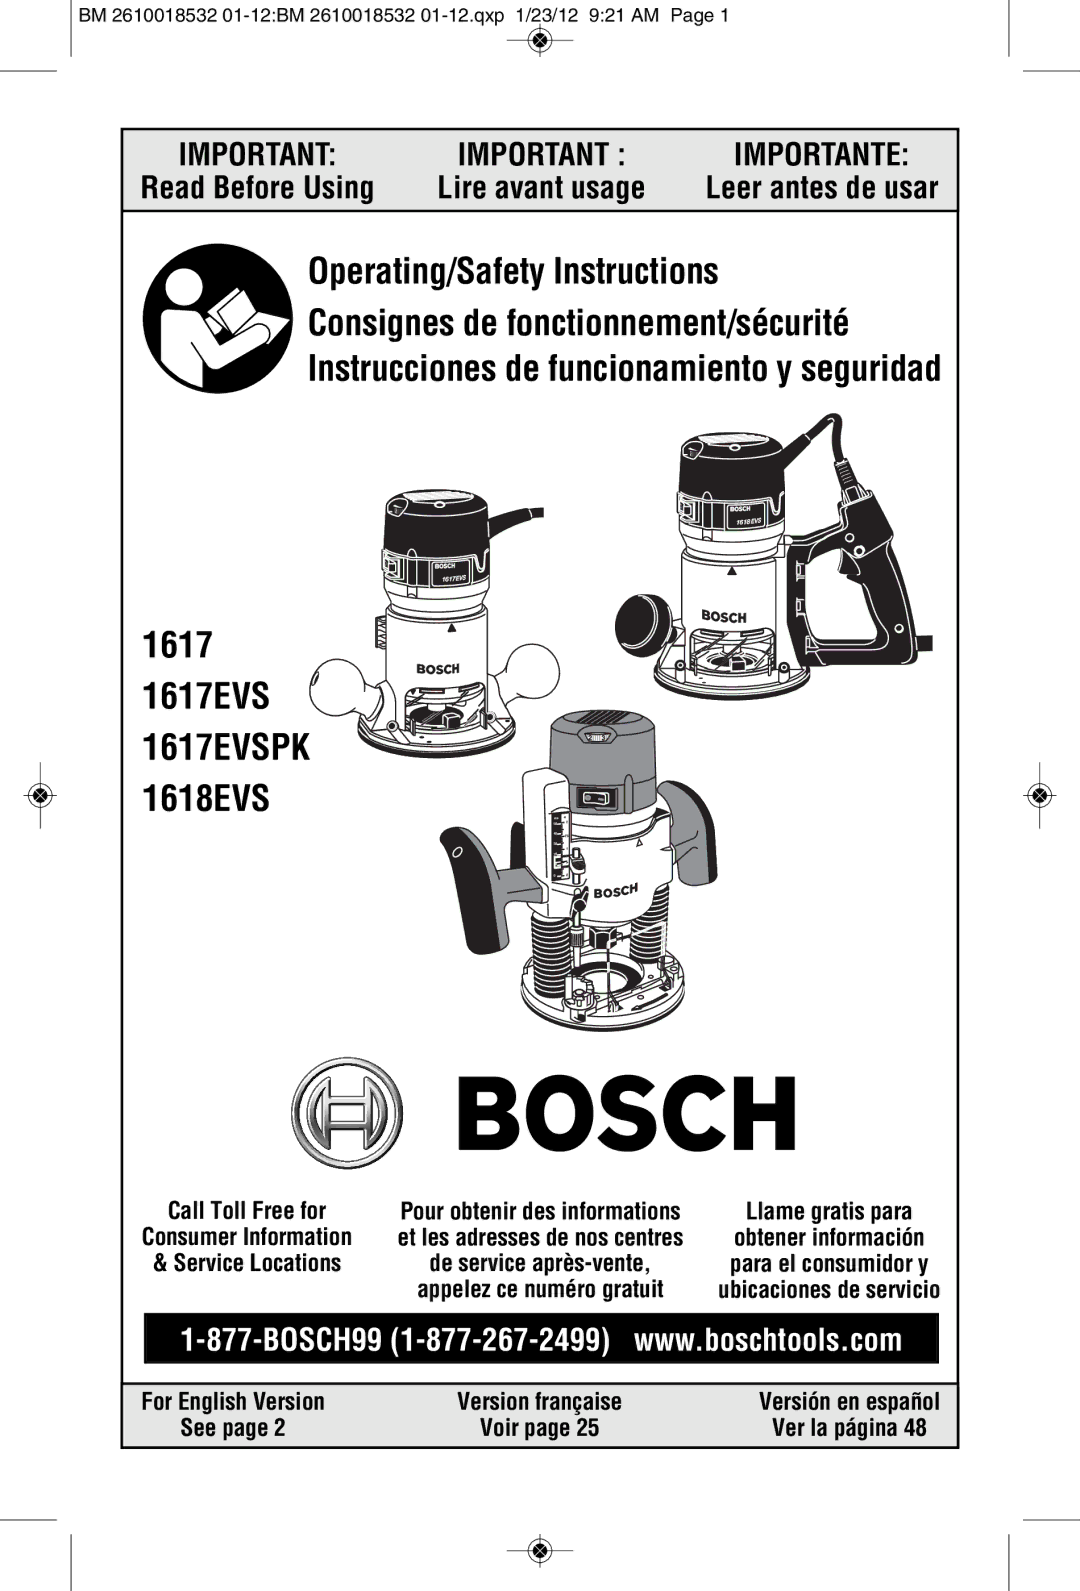 Bosch Power Tools 1618EVS, 1617, 16186 manual Leer antes de usar, BM 2610018532 01-12BM 2610018532 01-12.qxp 1/23/12 921 AM 